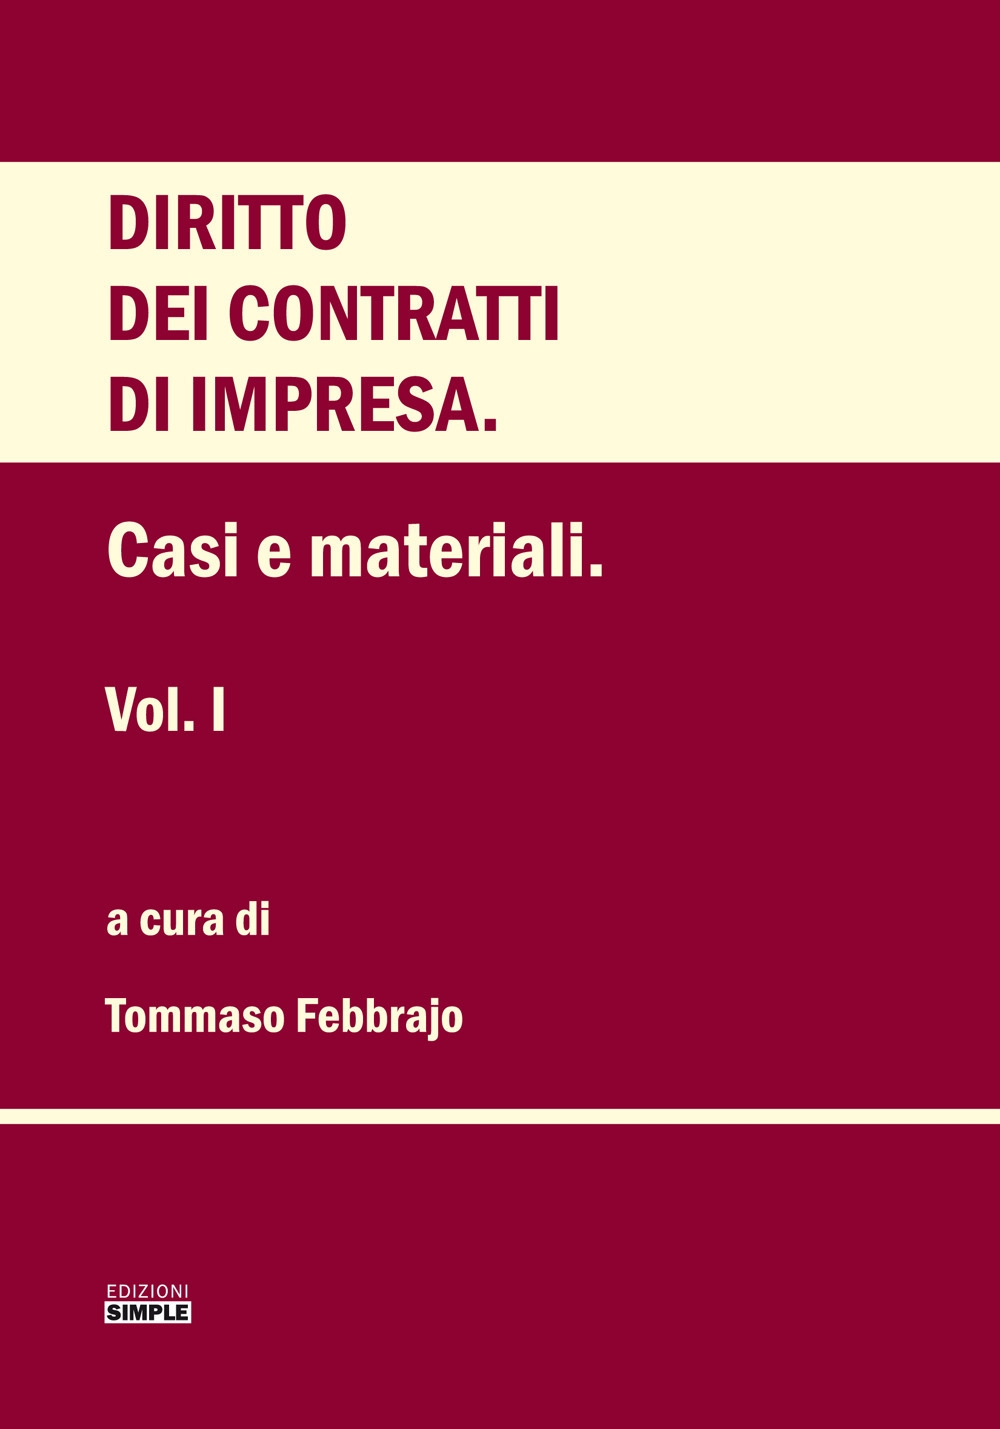 Libri Diritto Dei Contratti D'impresa Vol 01 NUOVO SIGILLATO, EDIZIONE DEL 01/12/2019 SUBITO DISPONIBILE